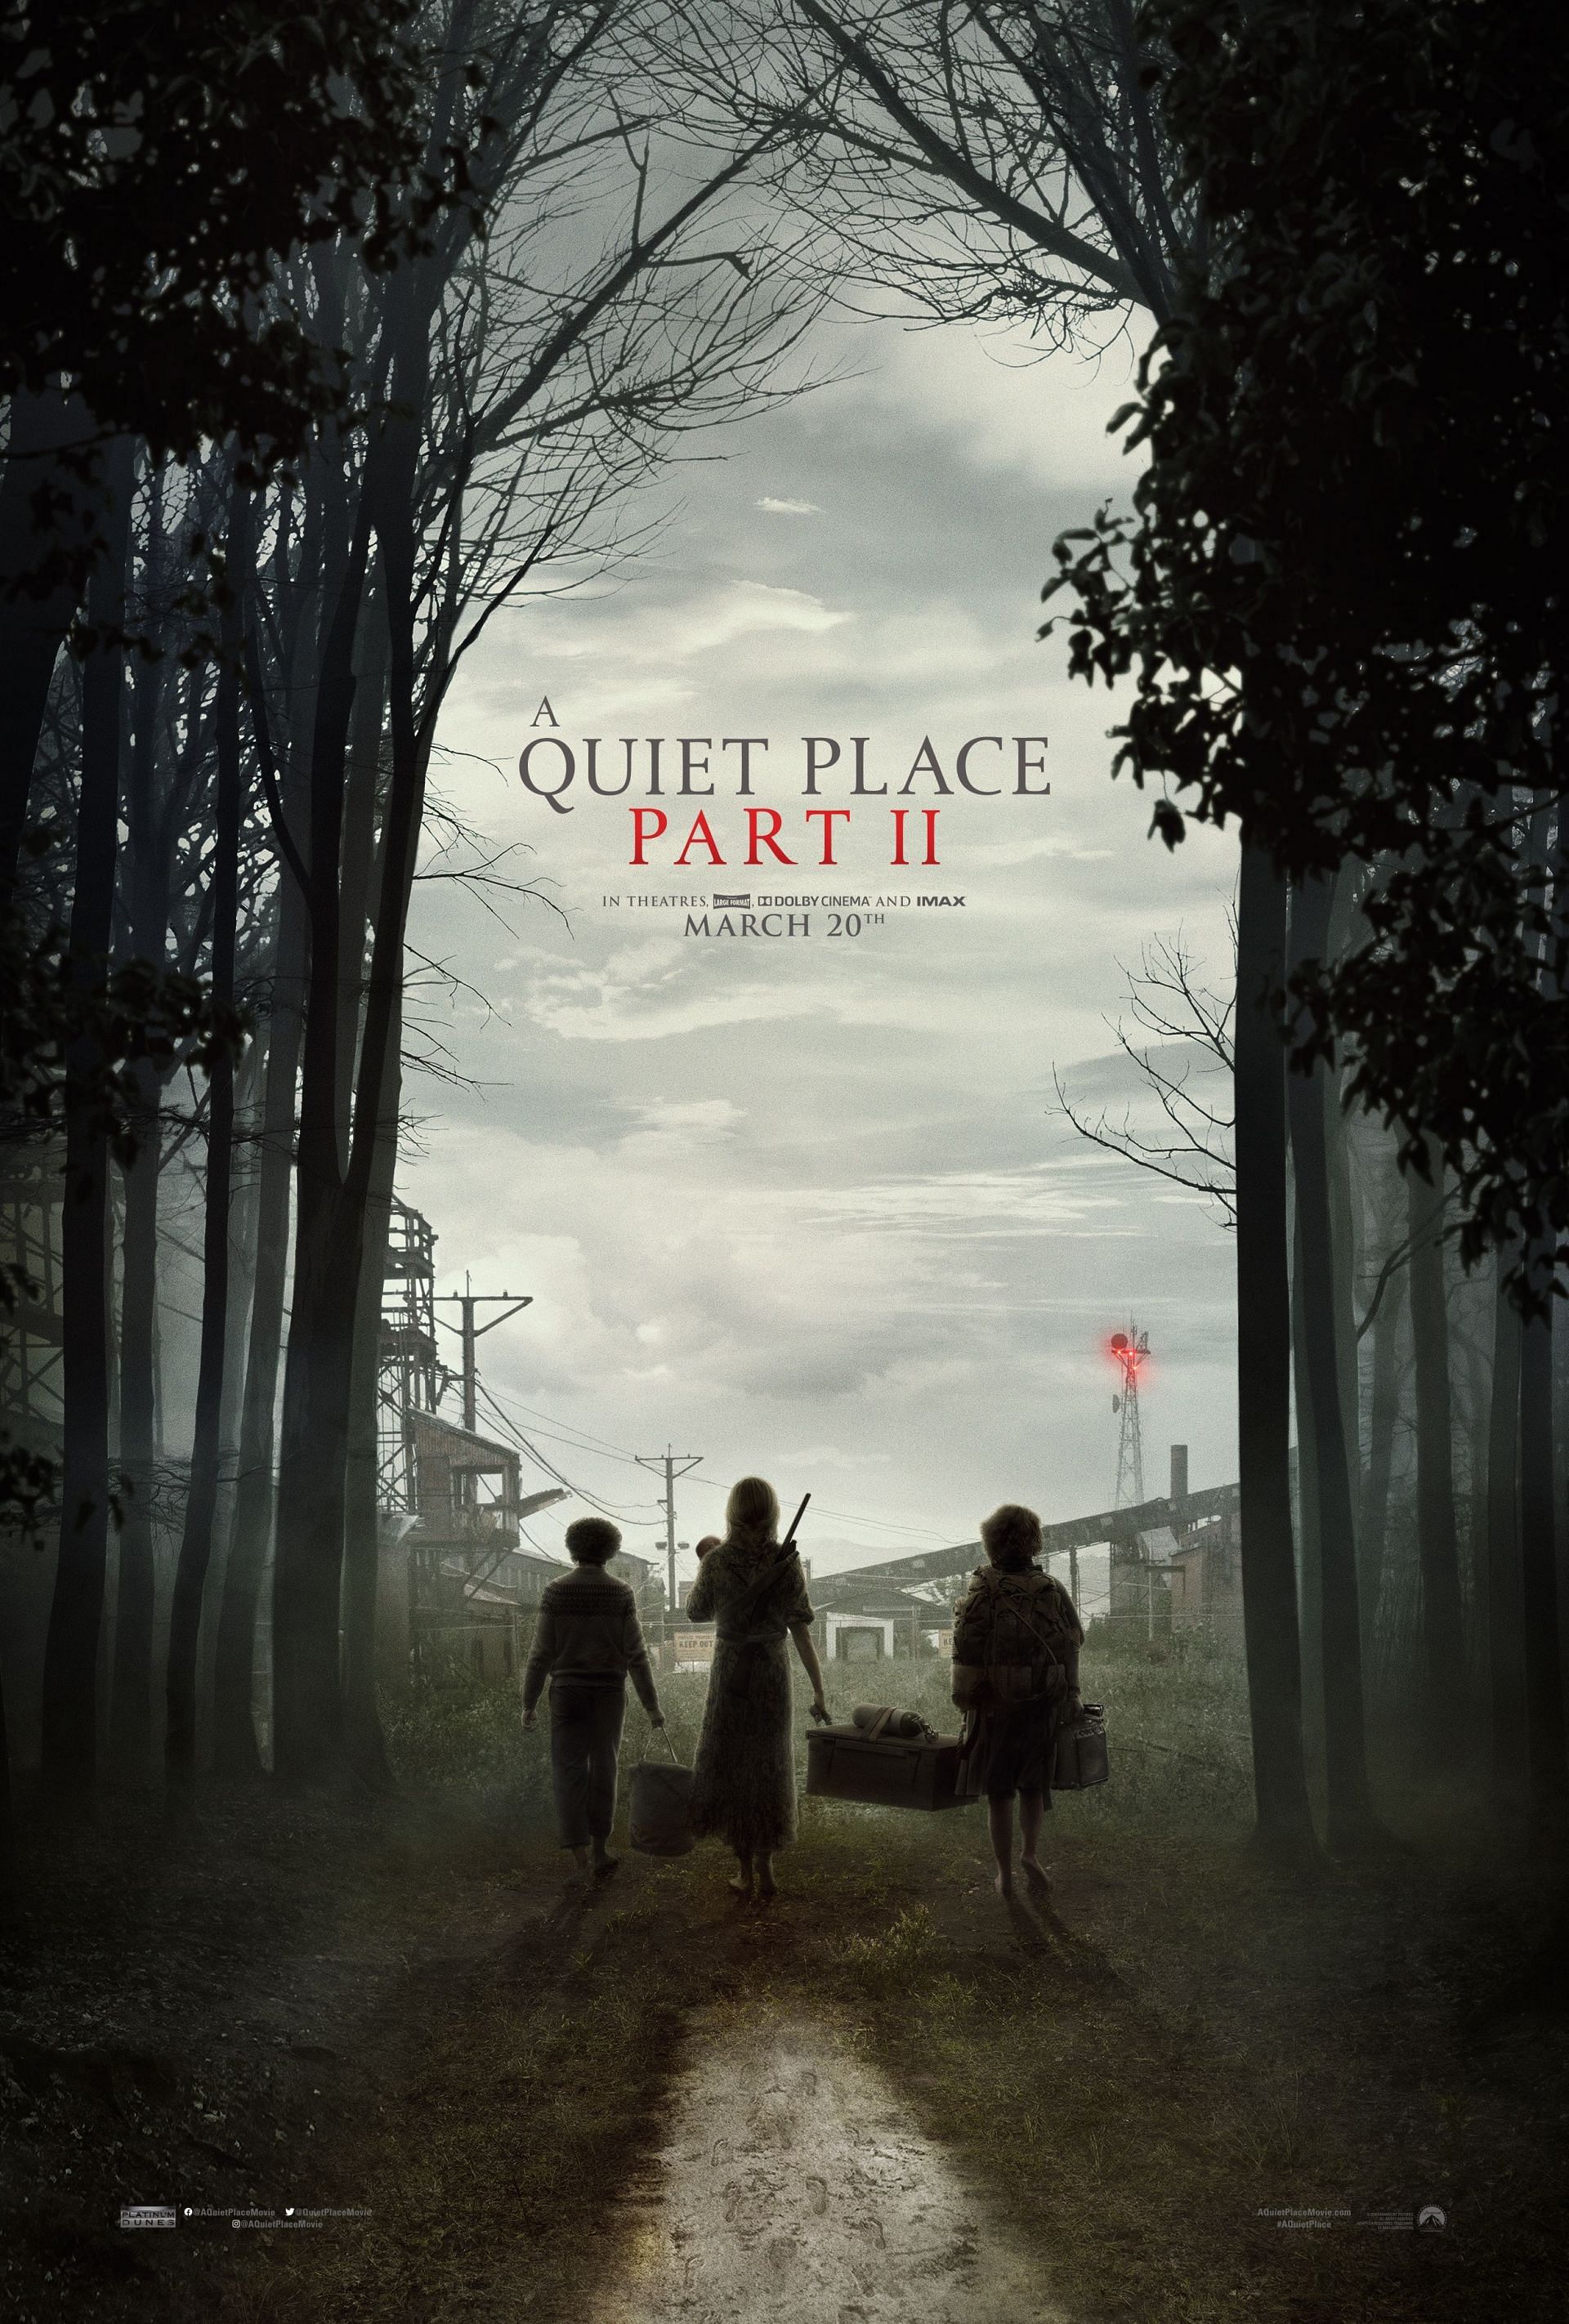 A Quiet Place: Part 2 (Image via Paramount)